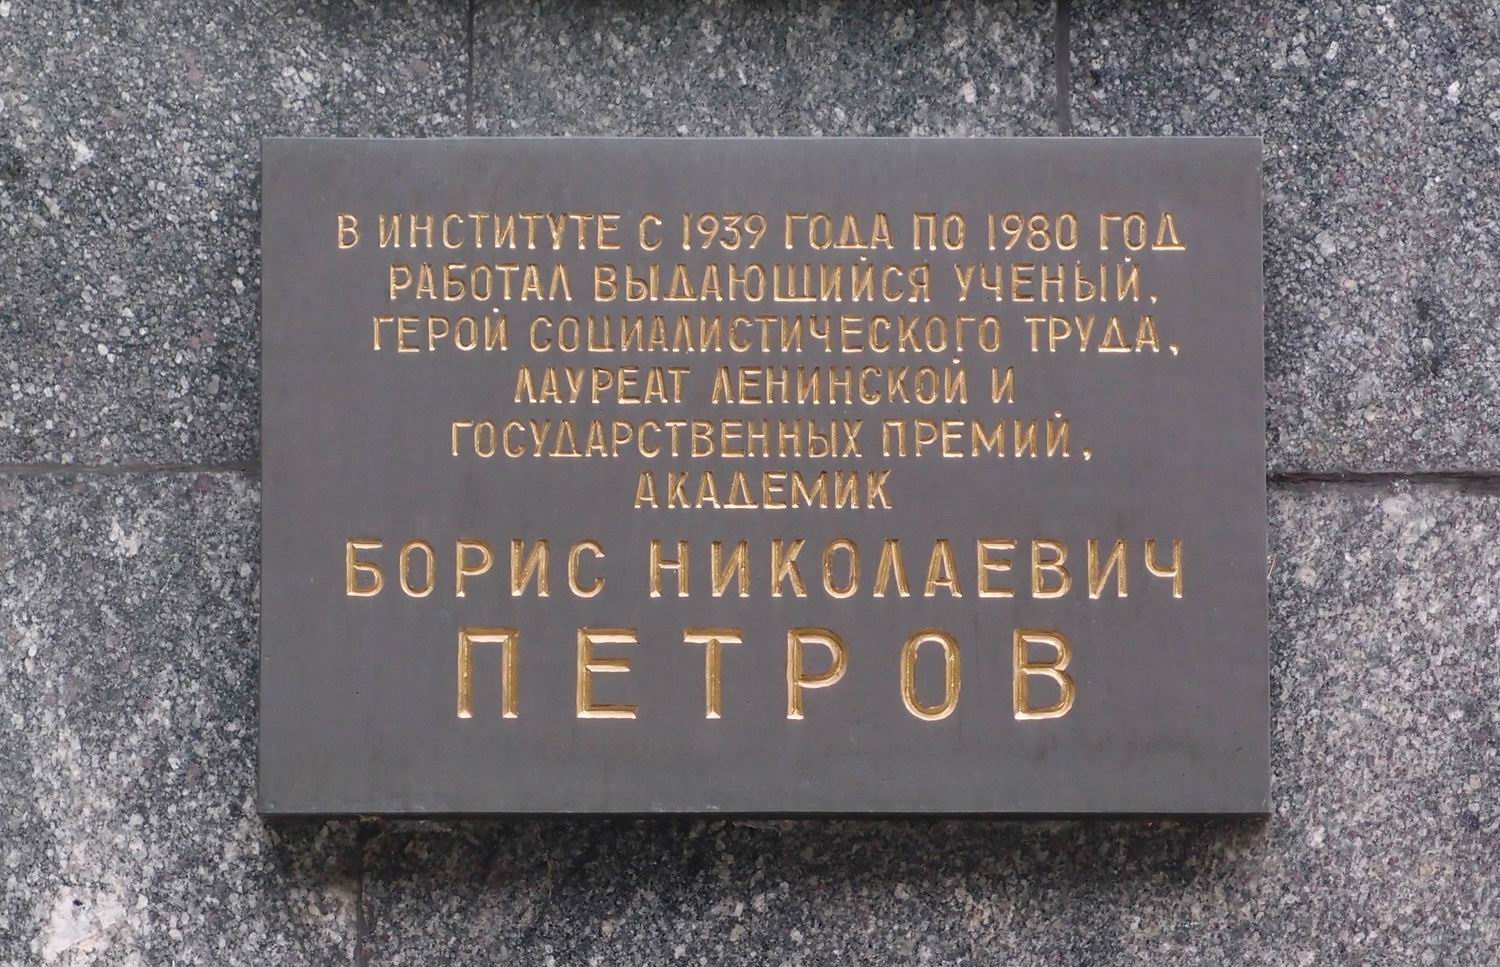 Мемориальная доска Петрову Б.Н. (1913–1980), арх. С.П.Дмитренко, на Профсоюзной улице, дом 65, открыта 4.2.1983.